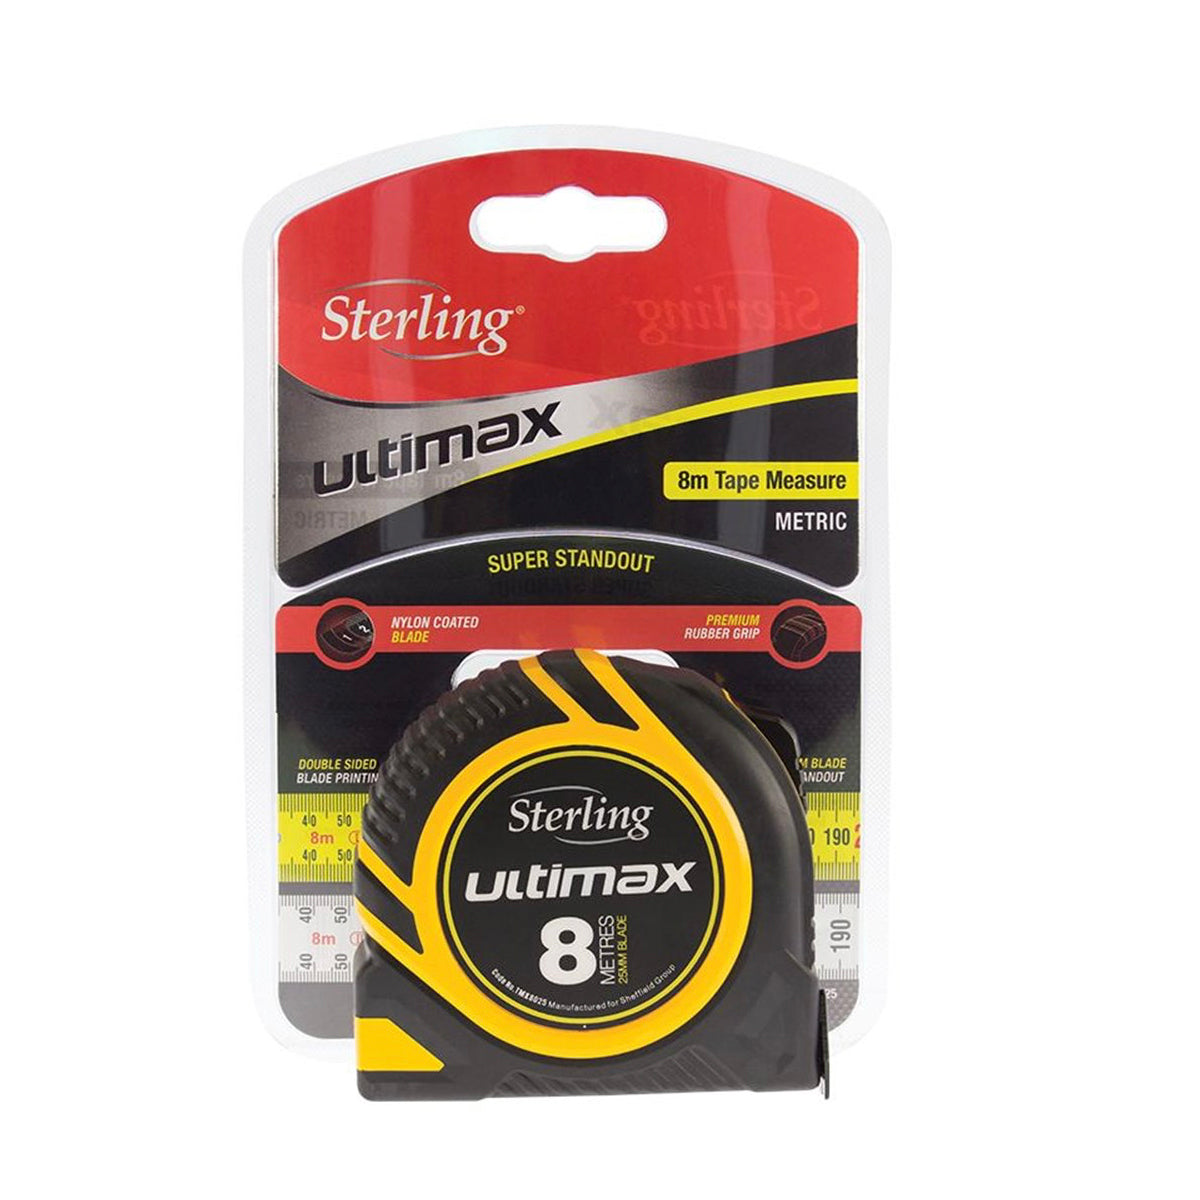 Ultimax Tape Measure: 8m x 25mm Metric